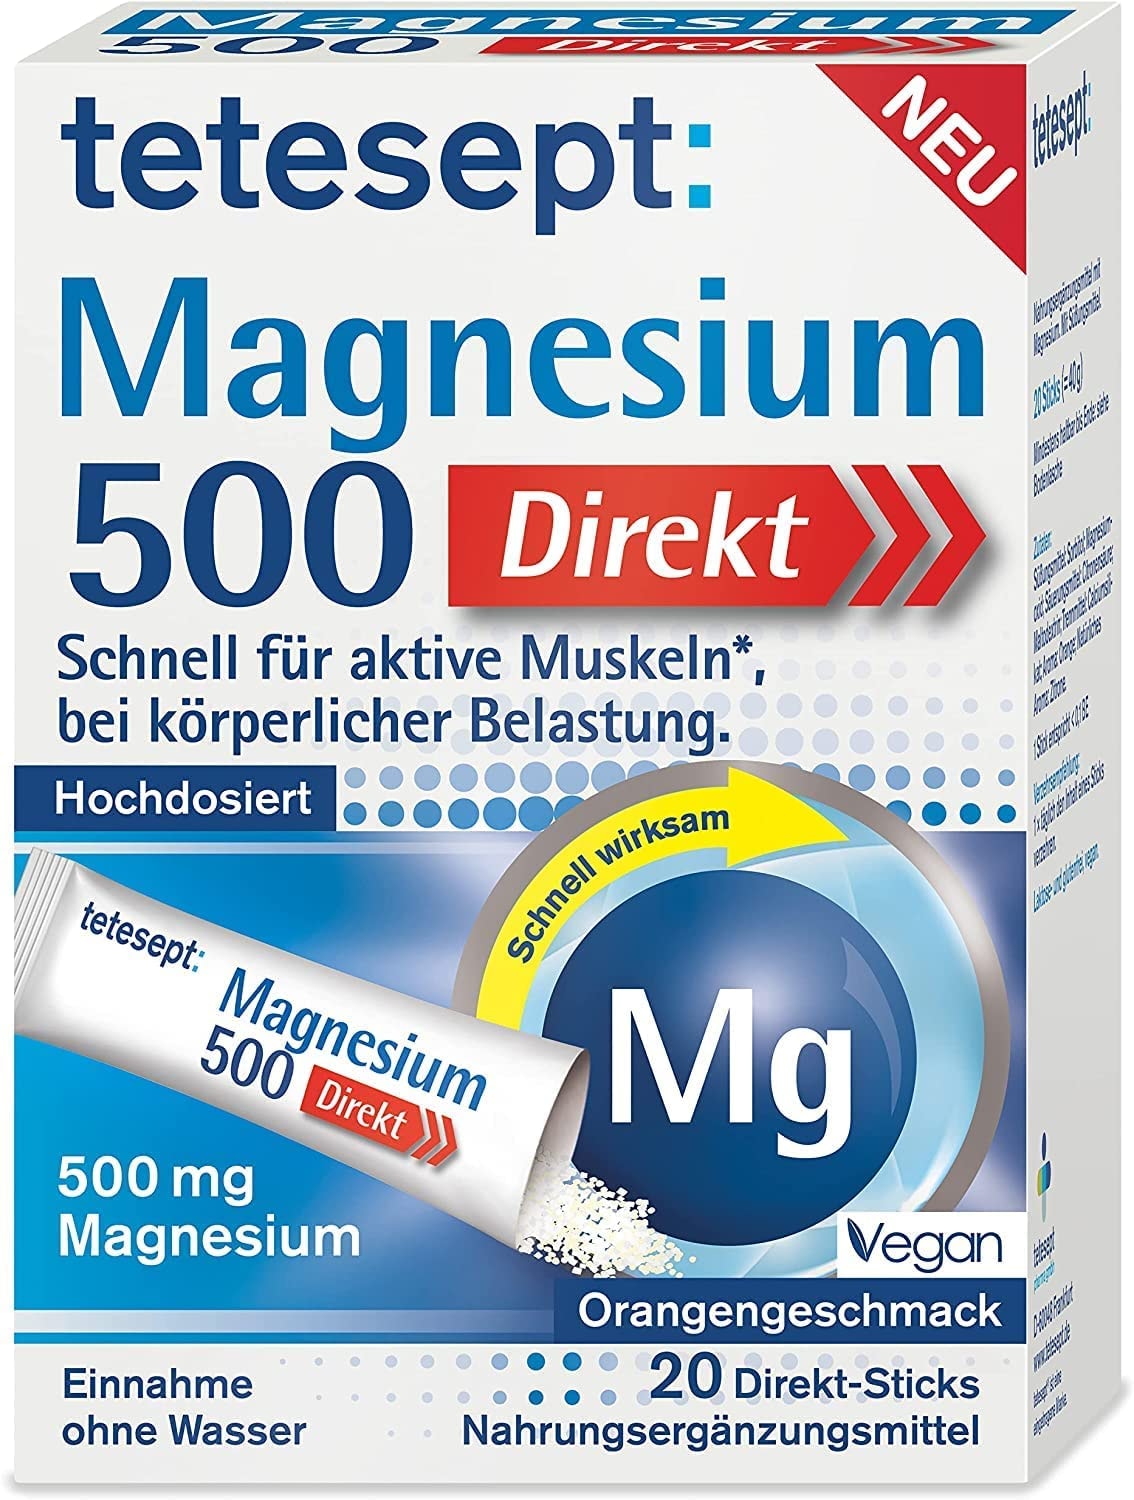 tetesept Magnesium 500 Direkt – Nahrungsergänzungsmittel mit Magnesium Pulver zur Einnahme ohne Wasser - Schnell für aktive Muskeln – 1 x 20 Direkt-Sticks